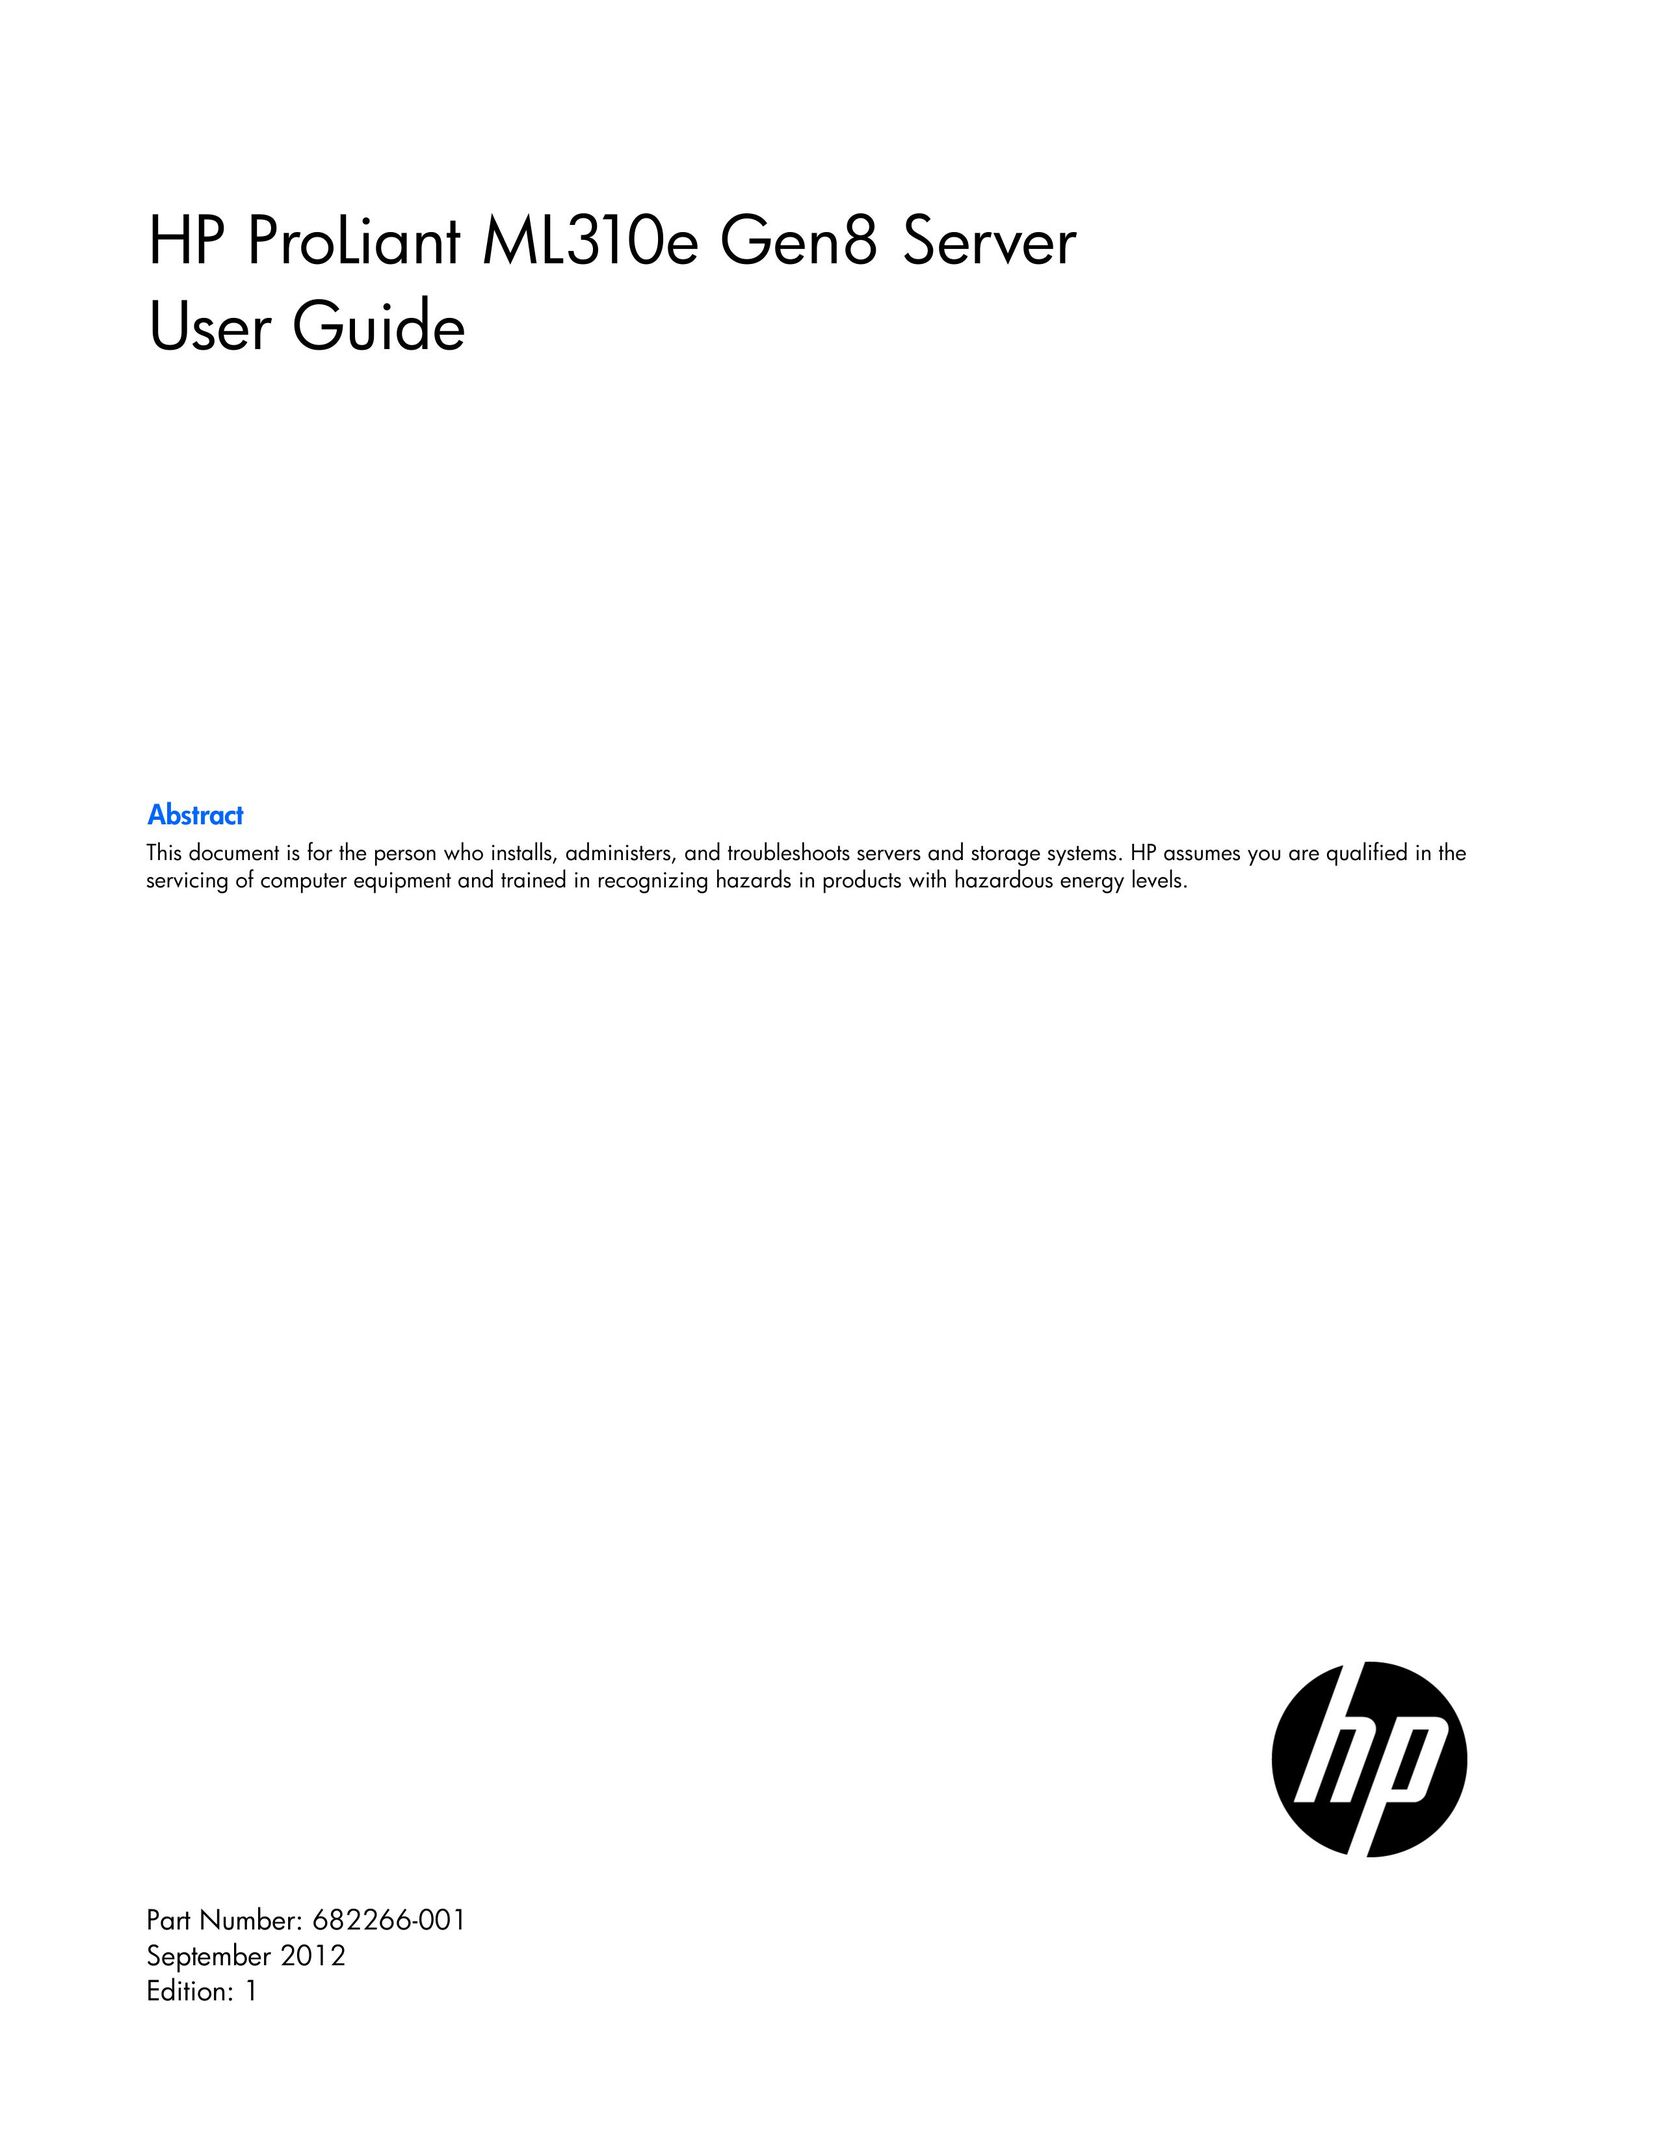 HP (Hewlett-Packard) 686233-S01 Server User Manual